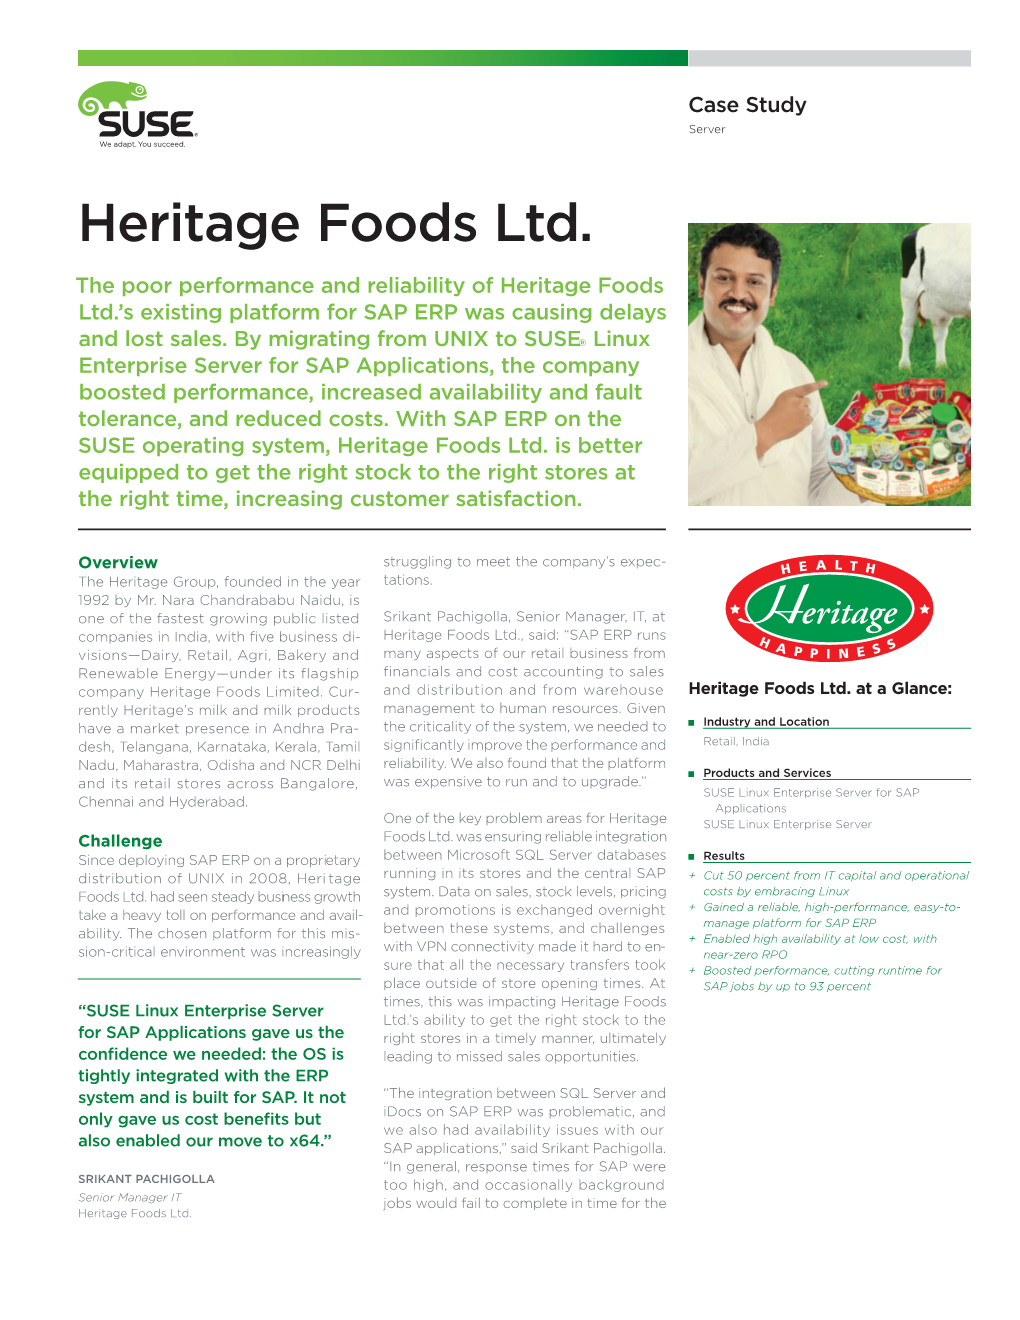 Heritage Foods Ltd